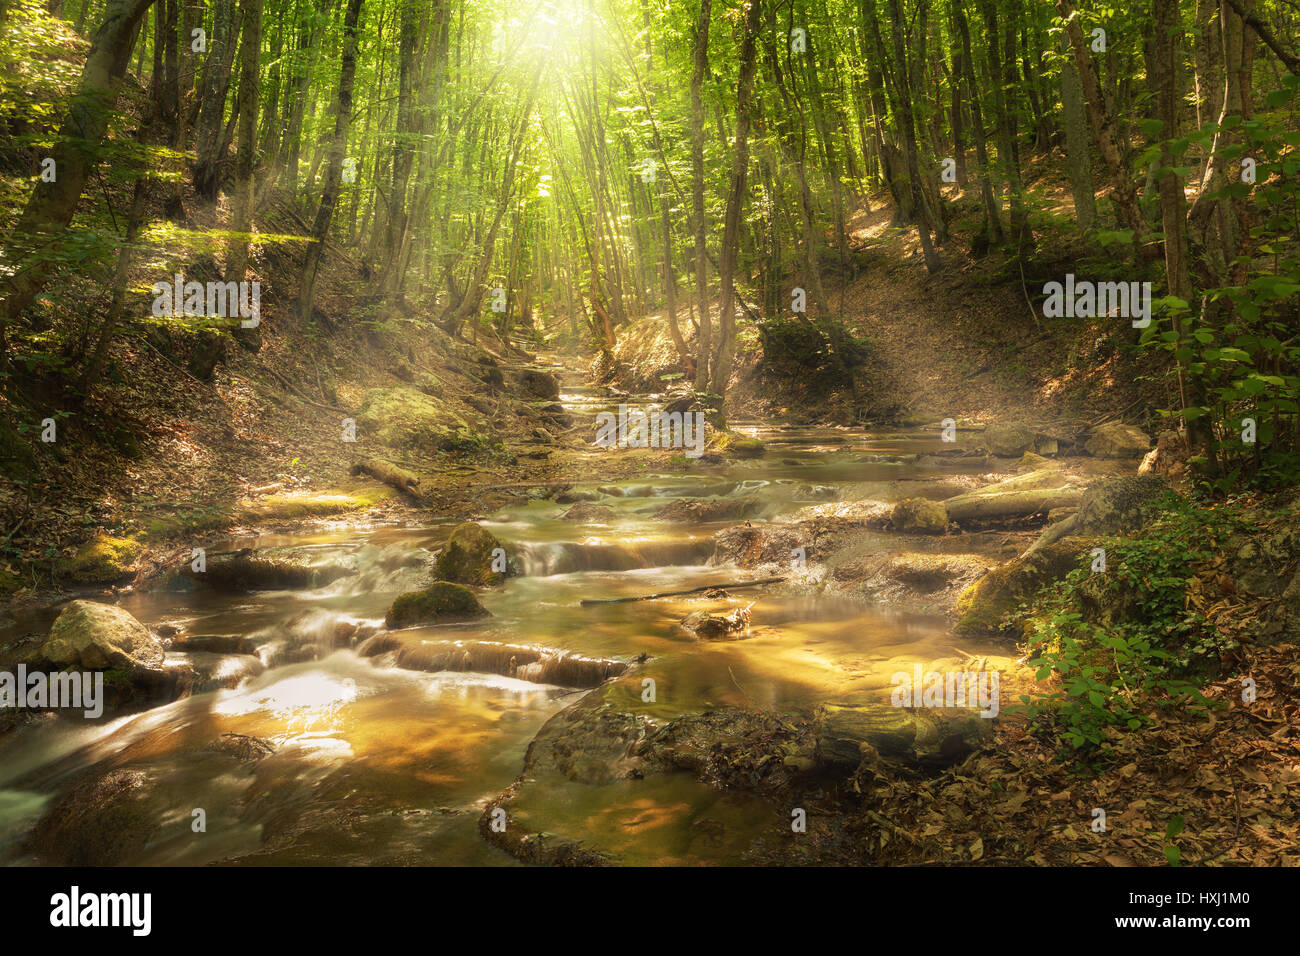 Hada del Bosque de montaña en el río con coloridos rayos de sol en la mañana de primavera. Fantástico paisaje con árboles, hojas verdes, piedras y borrosa en el agua Foto de stock